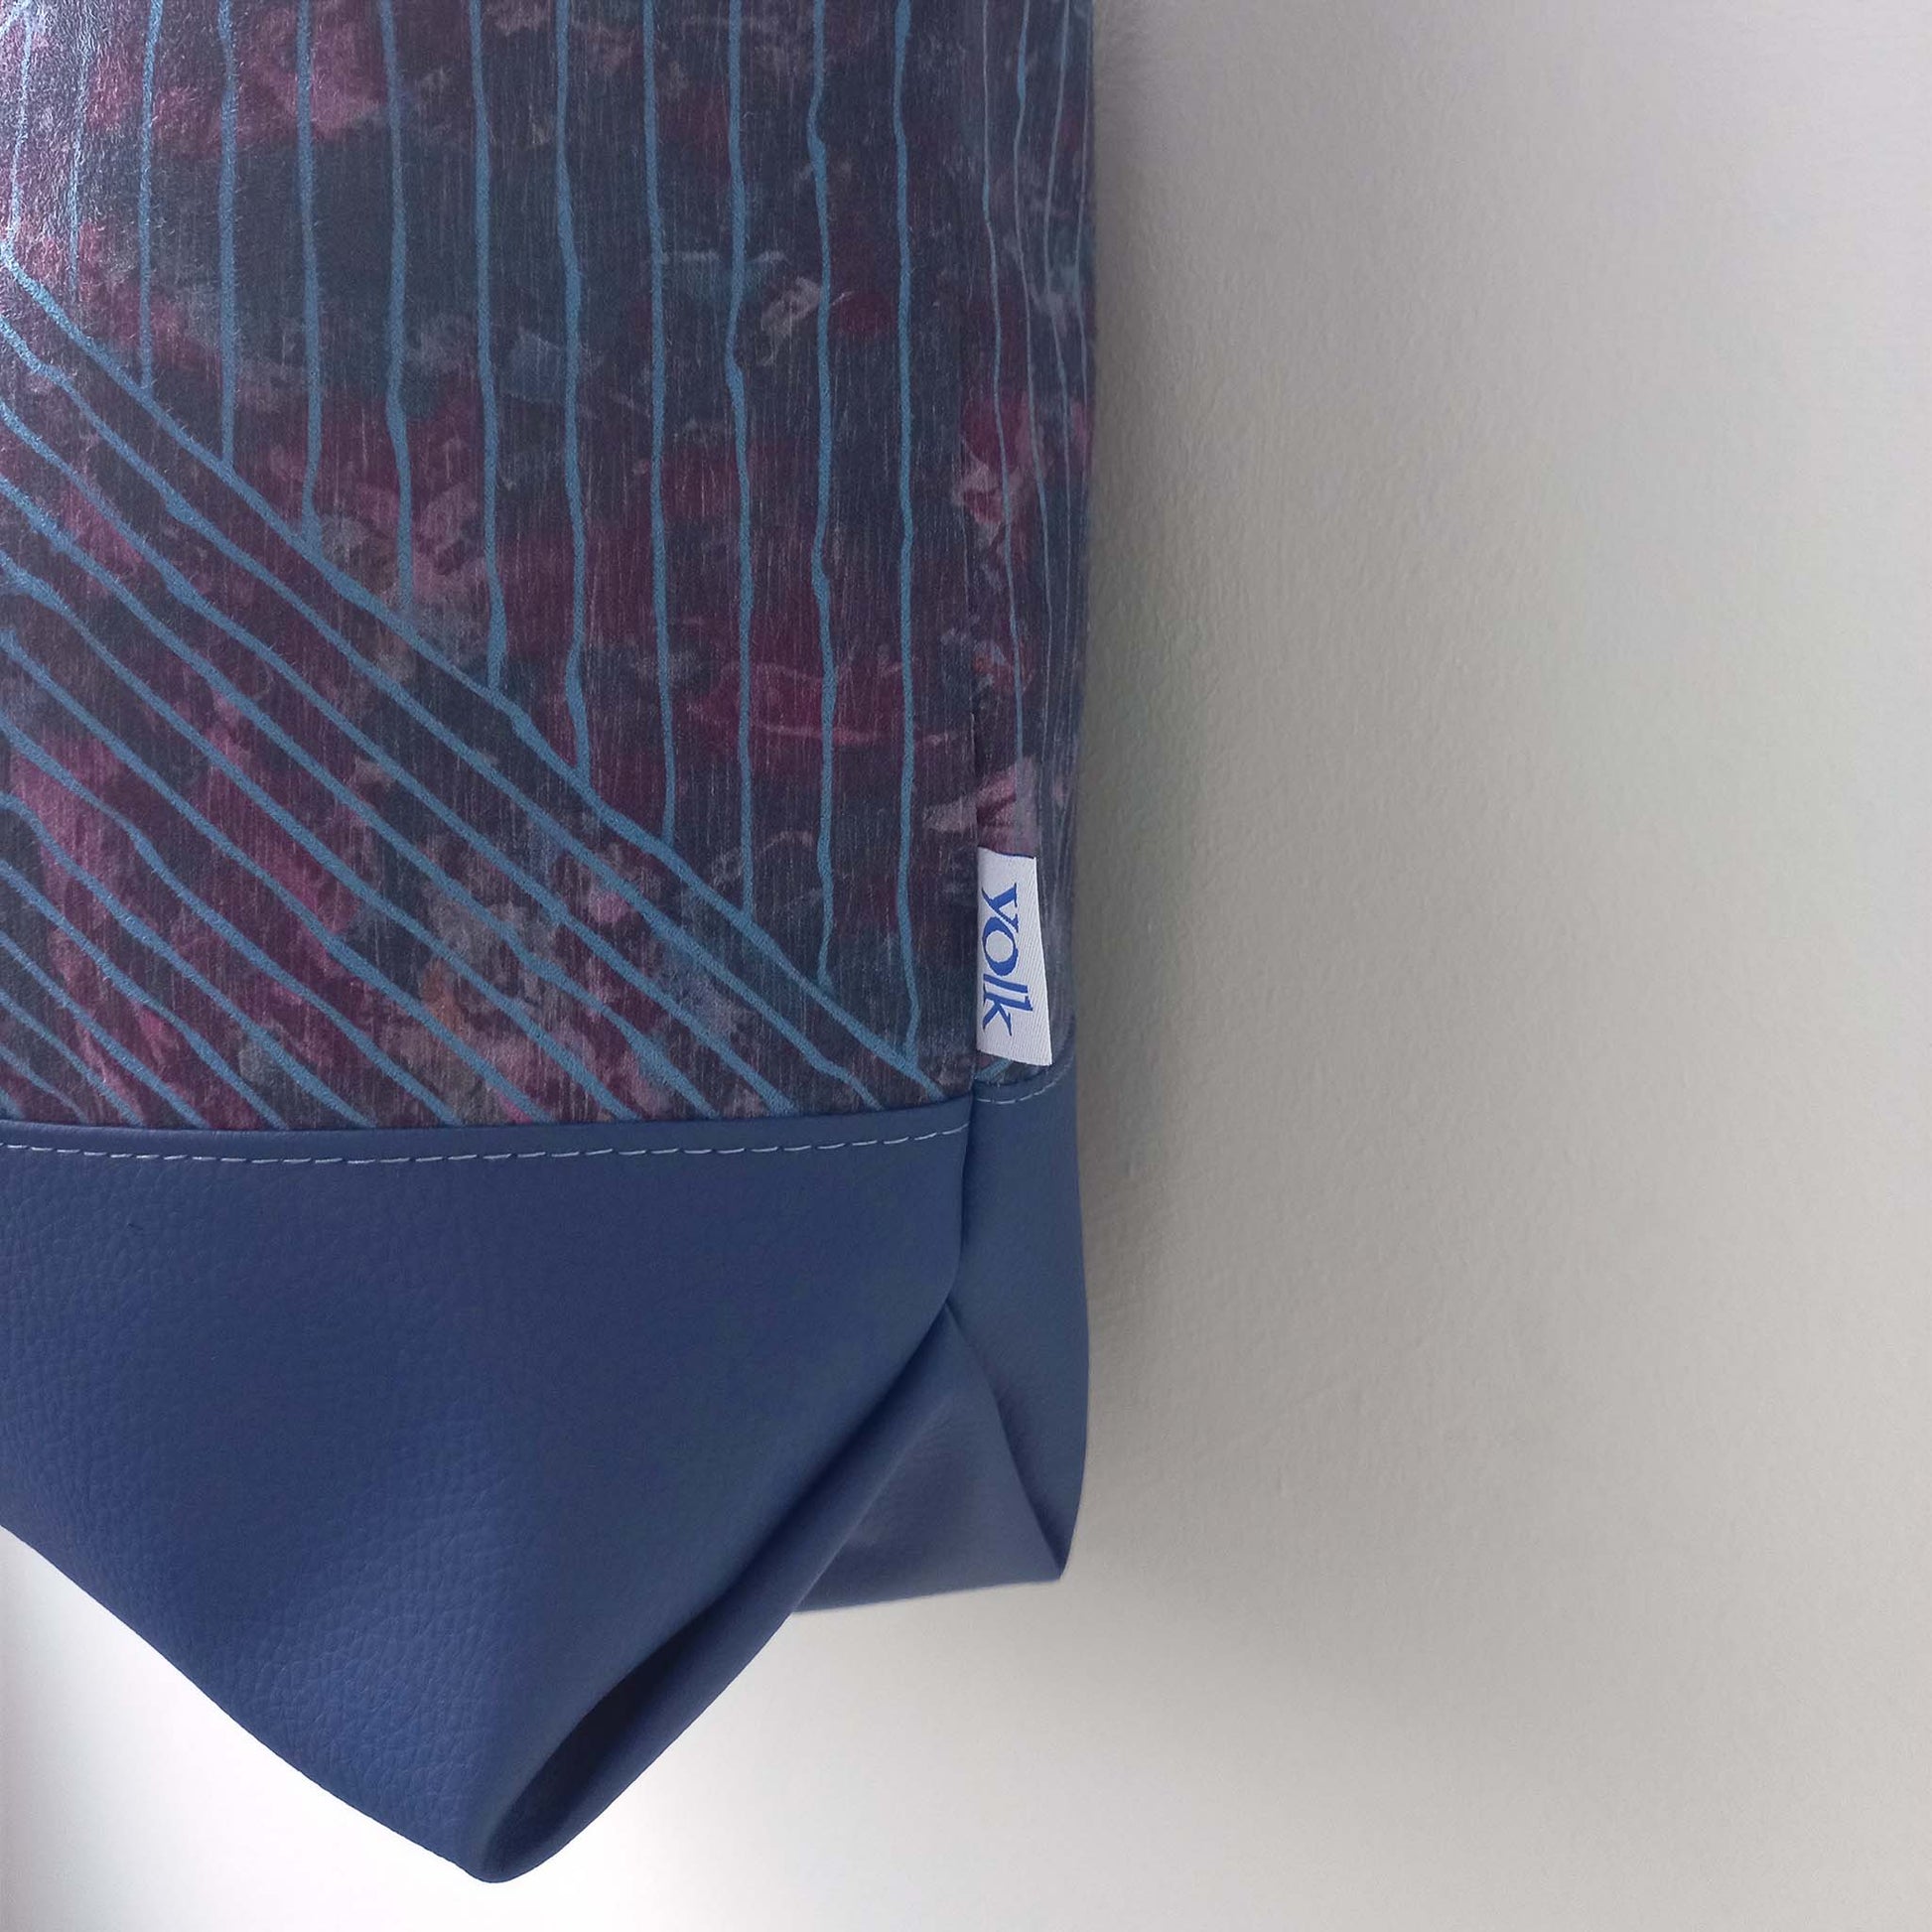 Printed shoulder bag detail